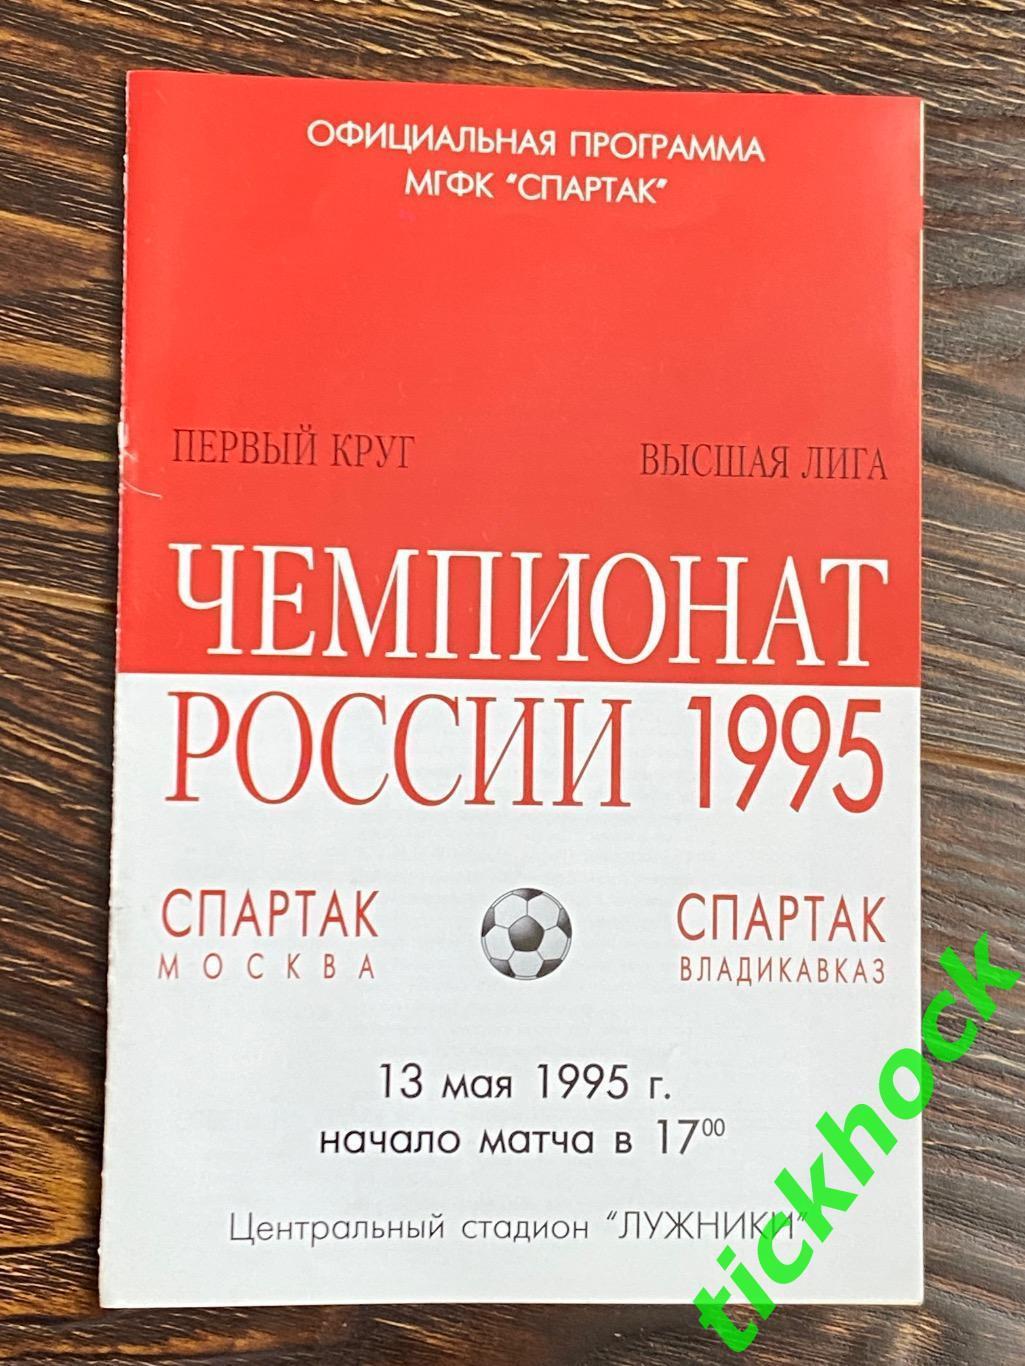 13.05. 1995 Спартак Москва - Спартак Владикавказ - SY